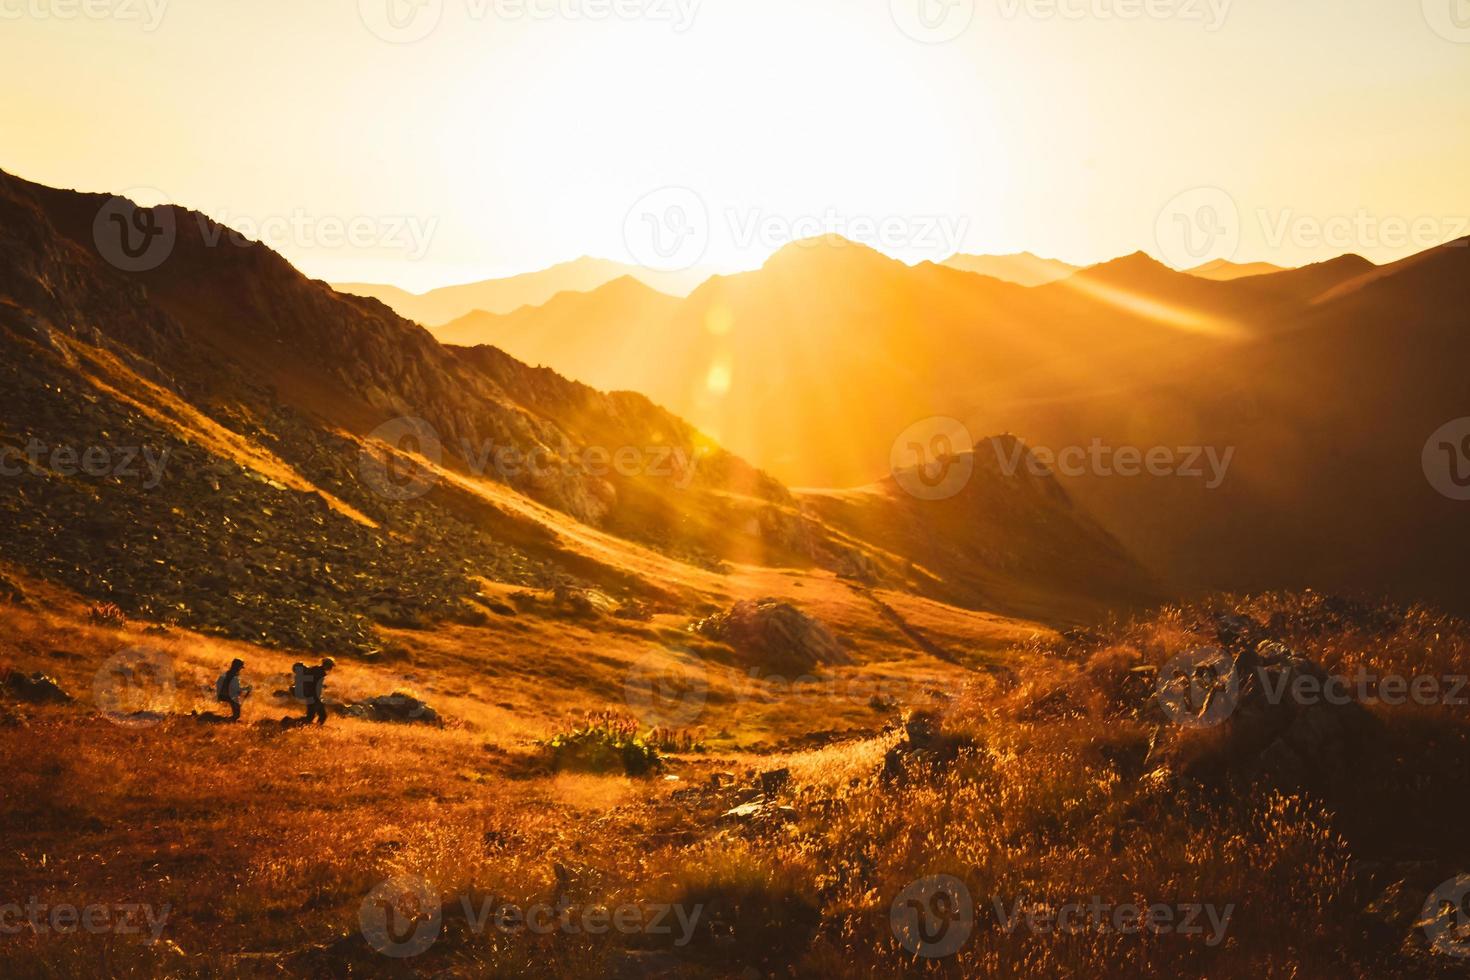 excursionistas de hombre y mujer en la caminata de distancia en el sendero al aire libre en la hermosa puesta de sol en otoño juntos contra el sol. personas activas inspiradoras cinematográficas en caminata en las montañas del cáucaso foto